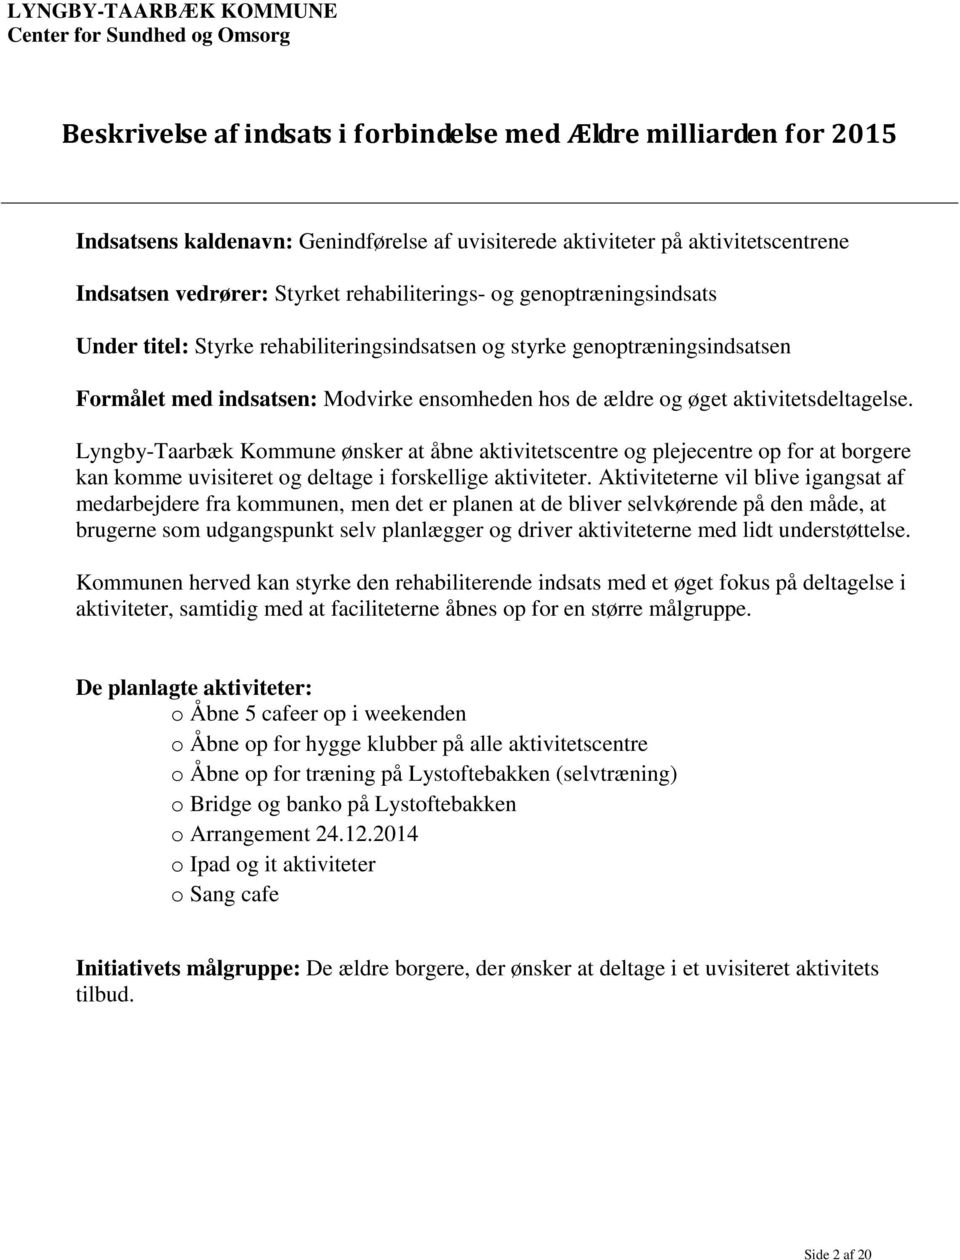 Lyngby-Taarbæk Kommune ønsker at åbne aktivitetscentre og plejecentre op for at borgere kan komme uvisiteret og deltage i forskellige aktiviteter.